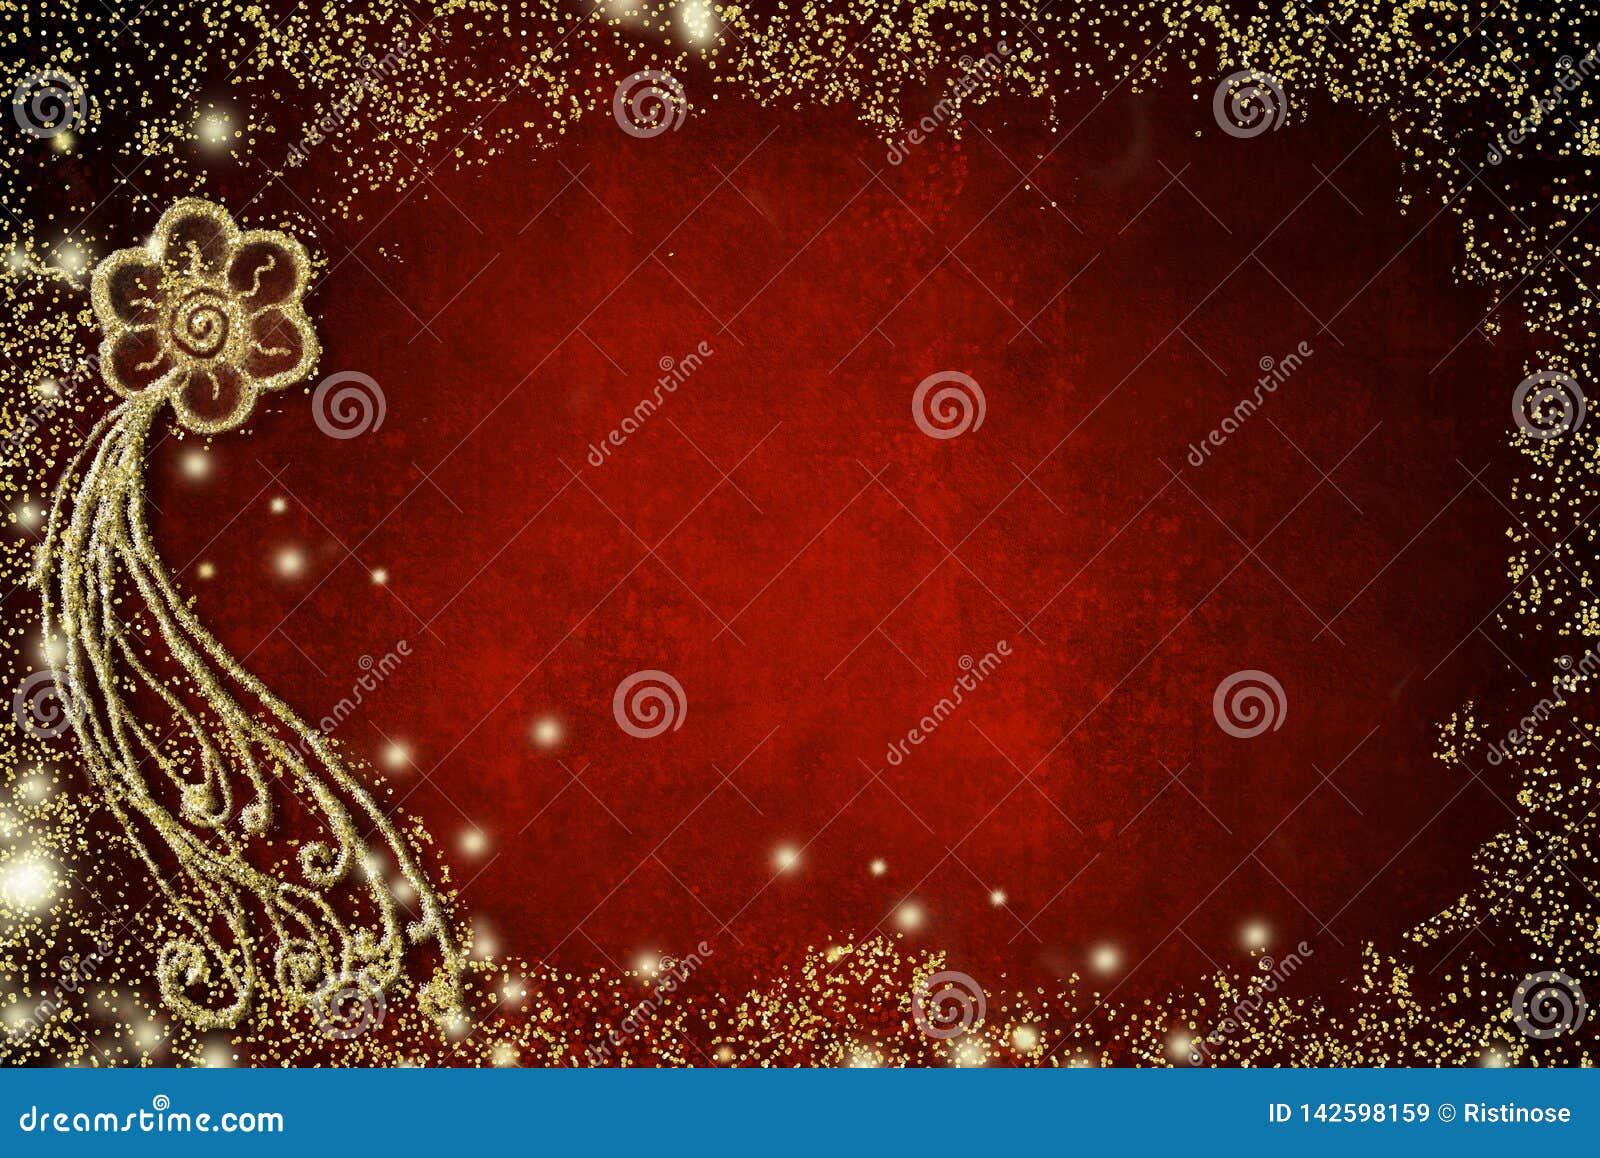 Υπόβαθρο για τις κάρτες εορτασμών Απλό λουλούδι. Υπόβαθρο για τις κάρτες εορτασμών Το απλό λουλούδι hand-drawn με χρυσό ακτινοβολεί στο κόκκινο υπόβαθρο εγγράφου grunge με το κενό διάστημα